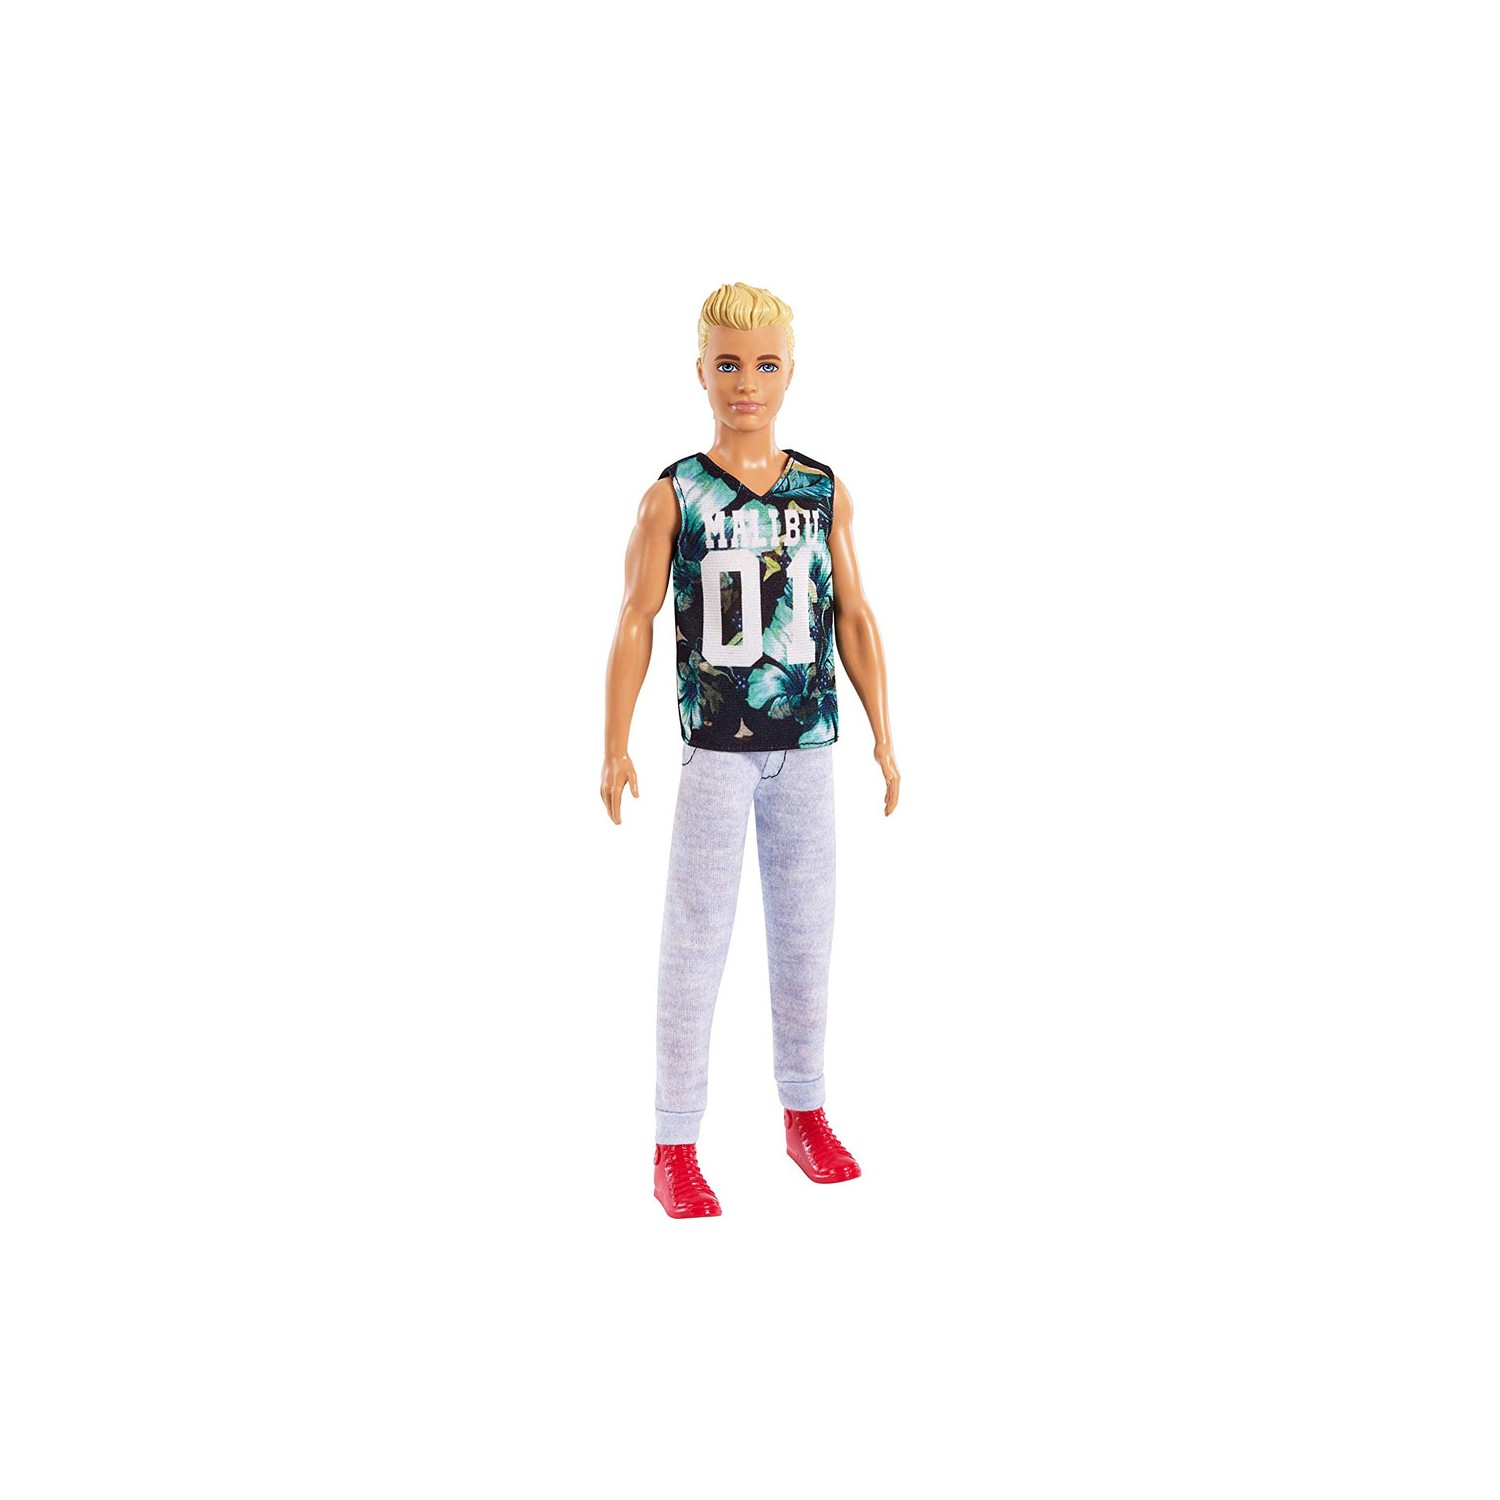 Кукла Barbie Кен DWK44-FXL63 один комплект куклы кен мужской костюм одежда для принца куклы кен аксессуары для вечеринки модный наряд для парня